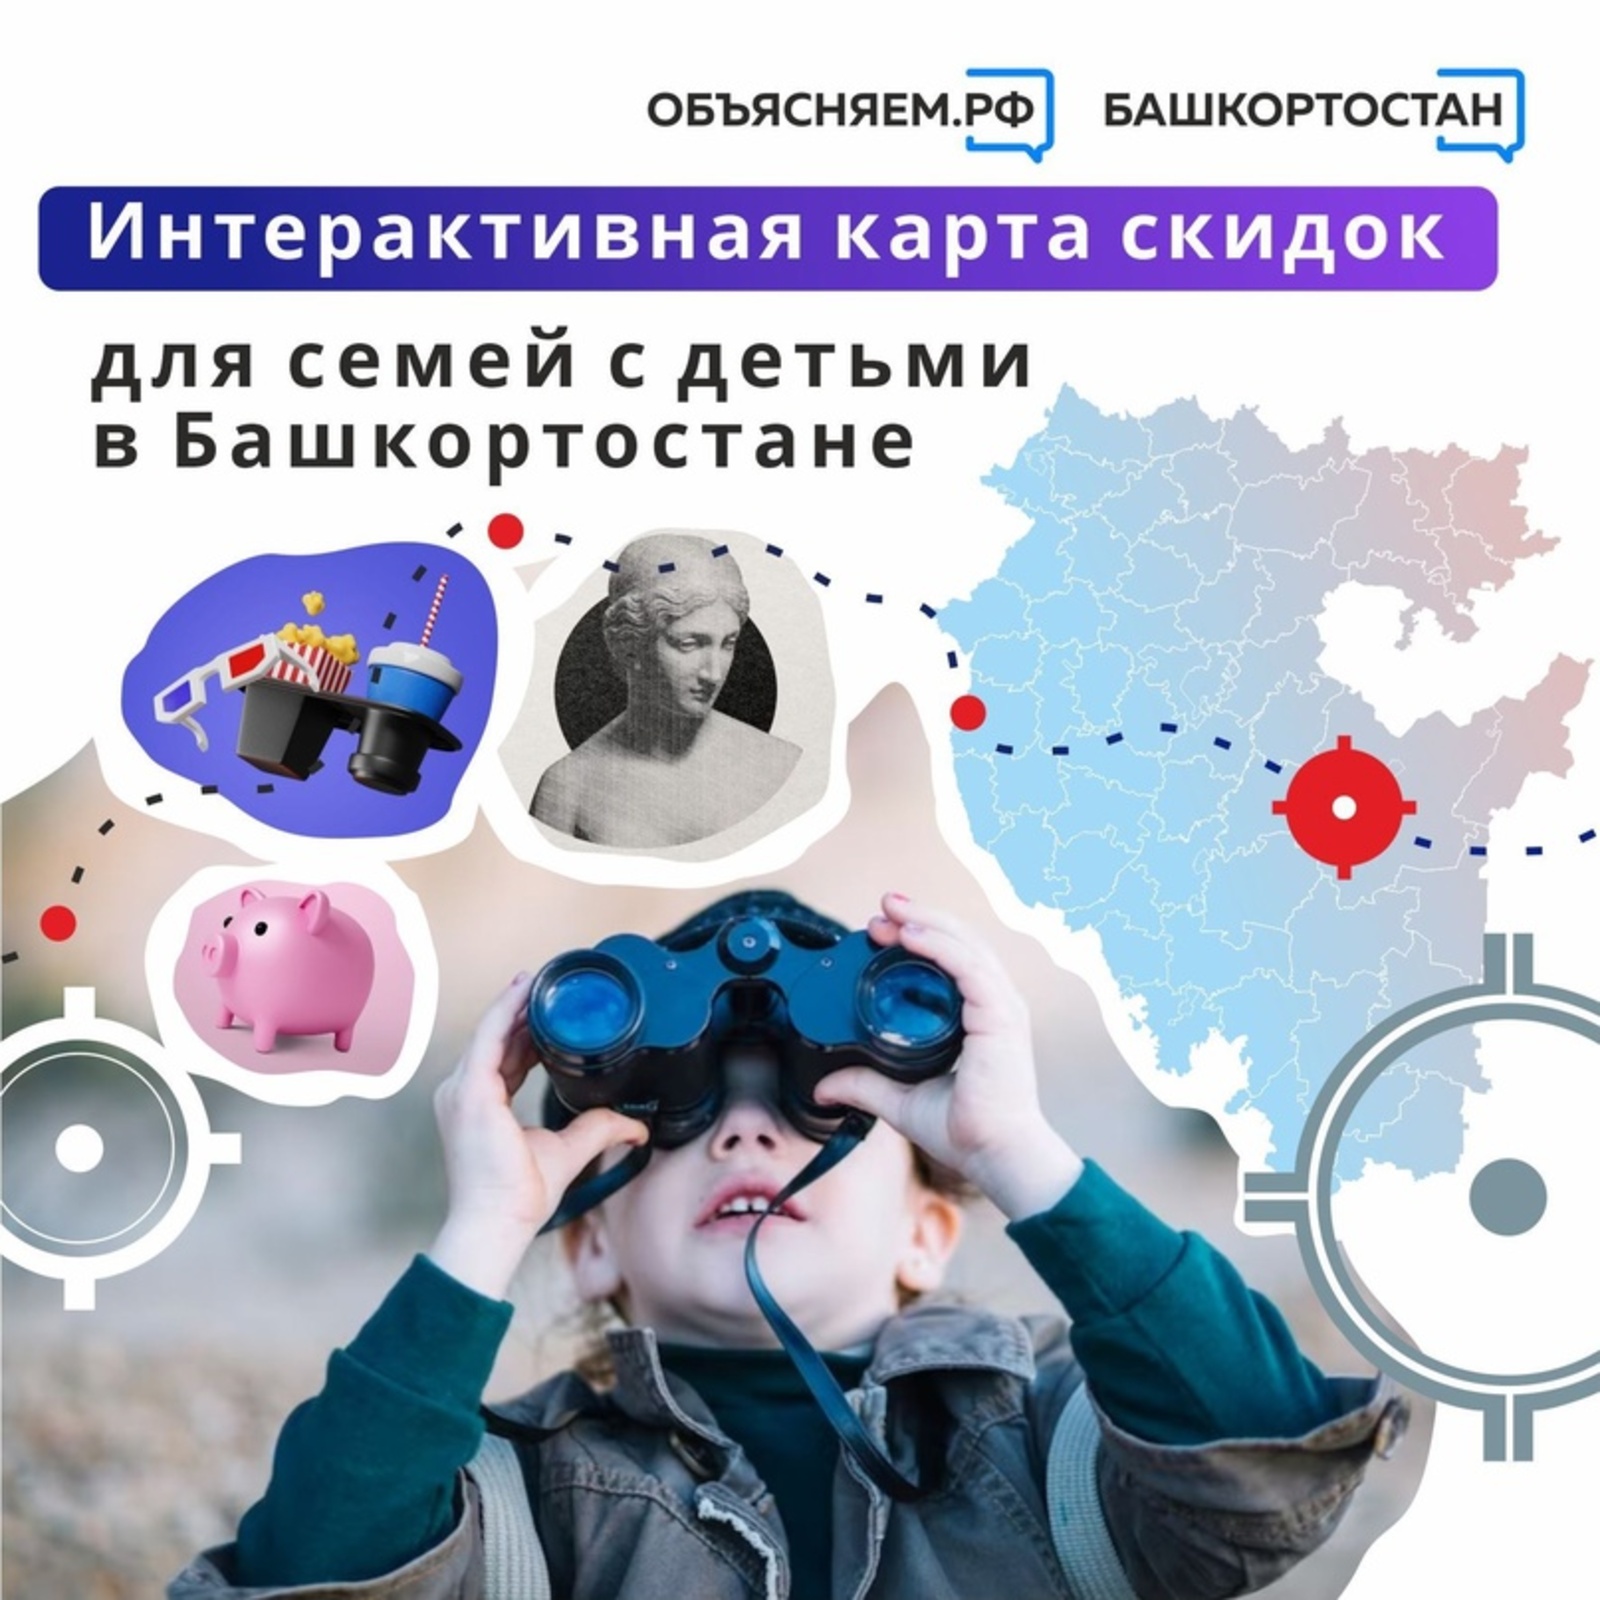 Об интерактивной карте скидок для семей с детьми в Башкортостане